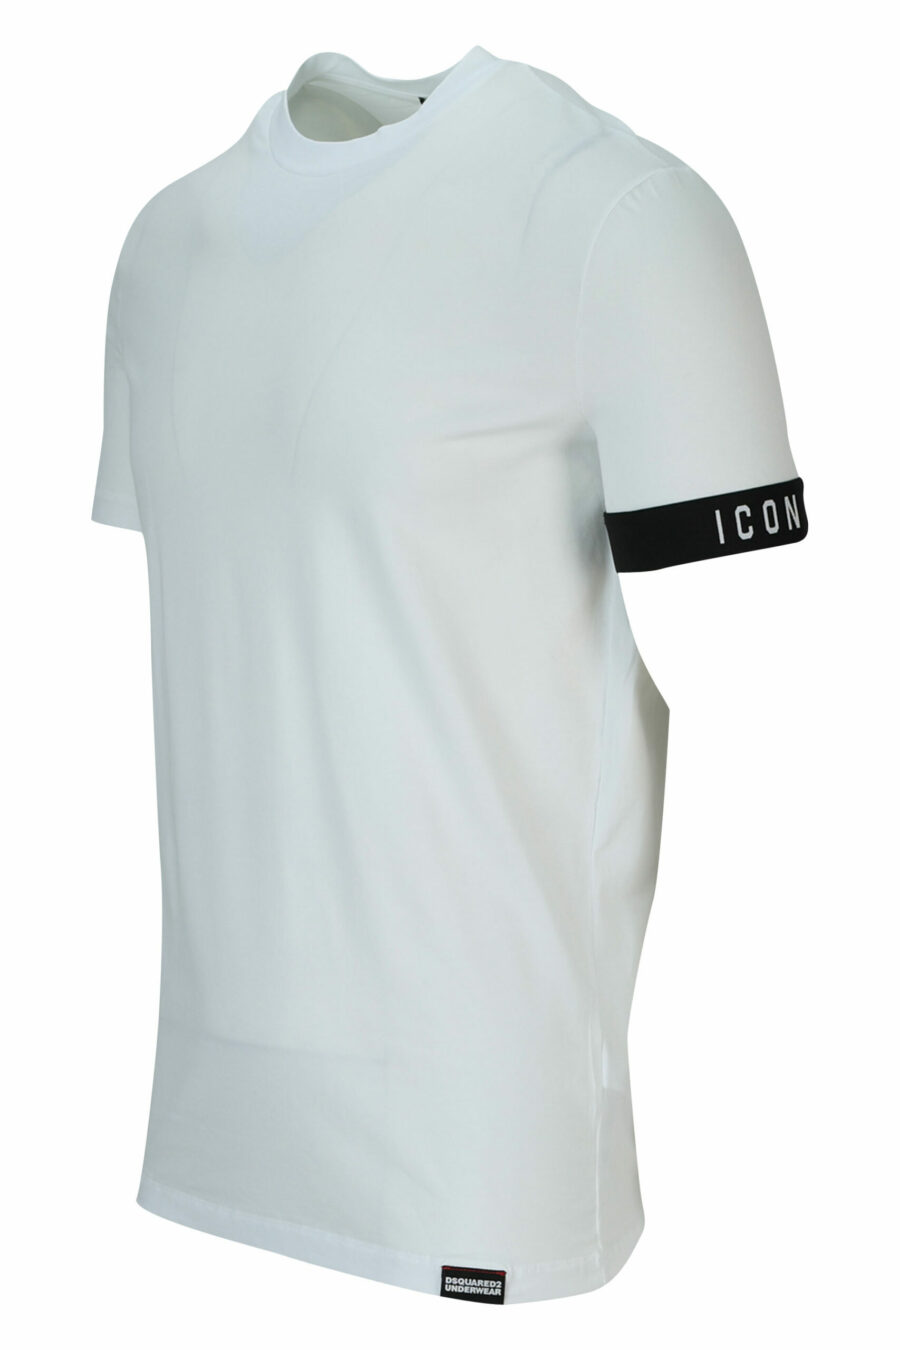 Weißes T-Shirt mit schwarzem Logo - 8032674767493 1 skaliert